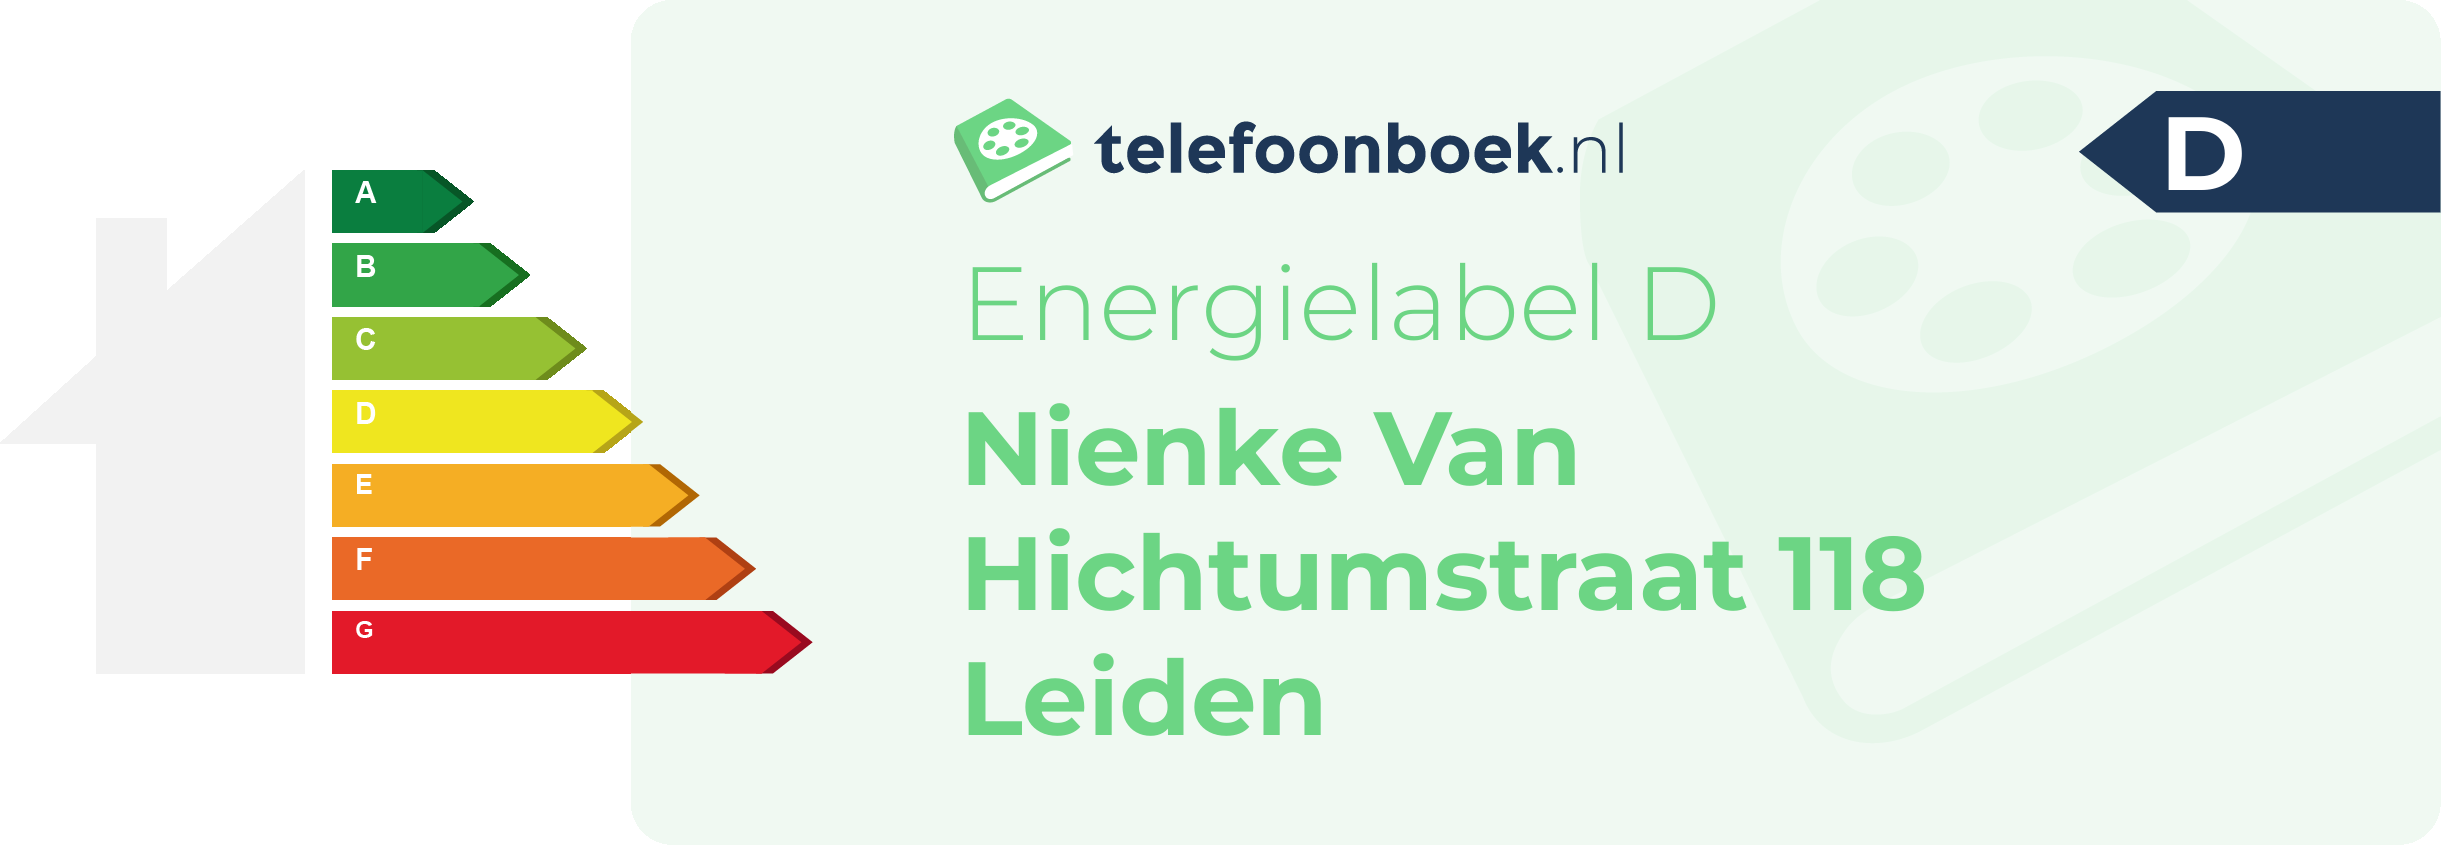 Energielabel Nienke Van Hichtumstraat 118 Leiden